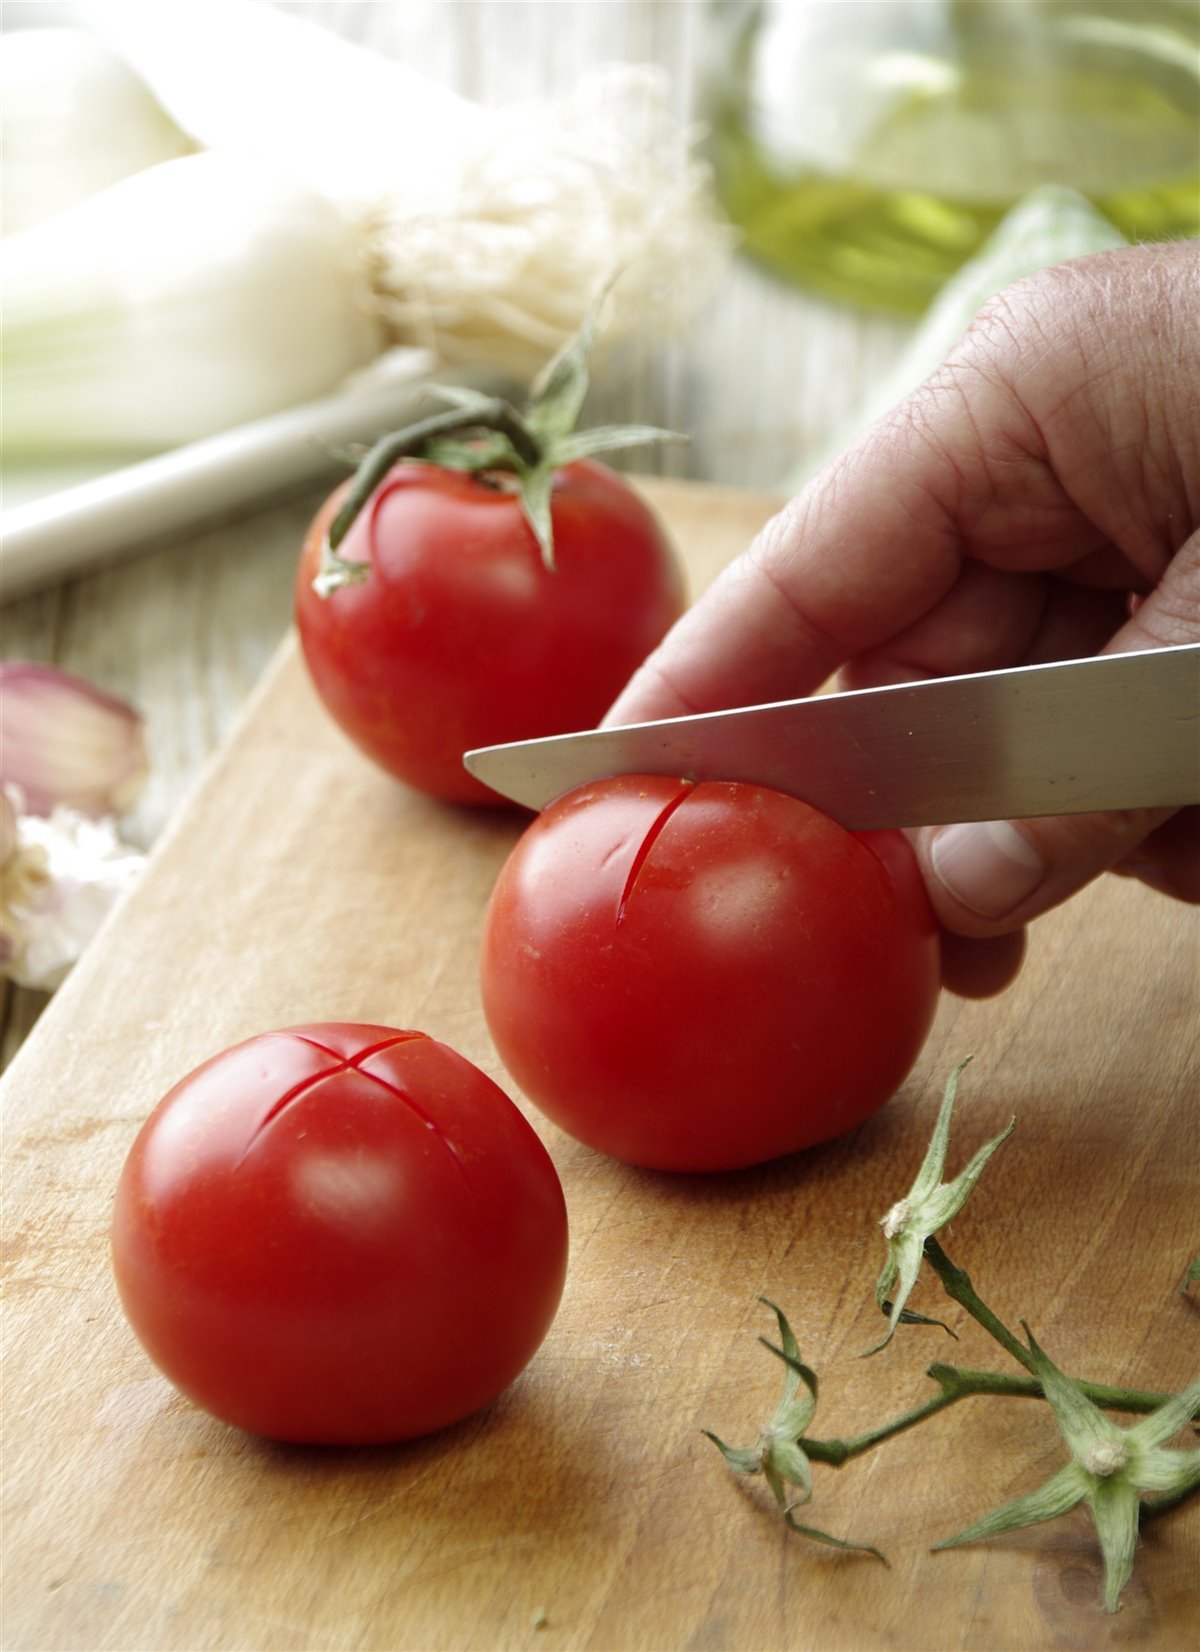 1. Escalda los tomates